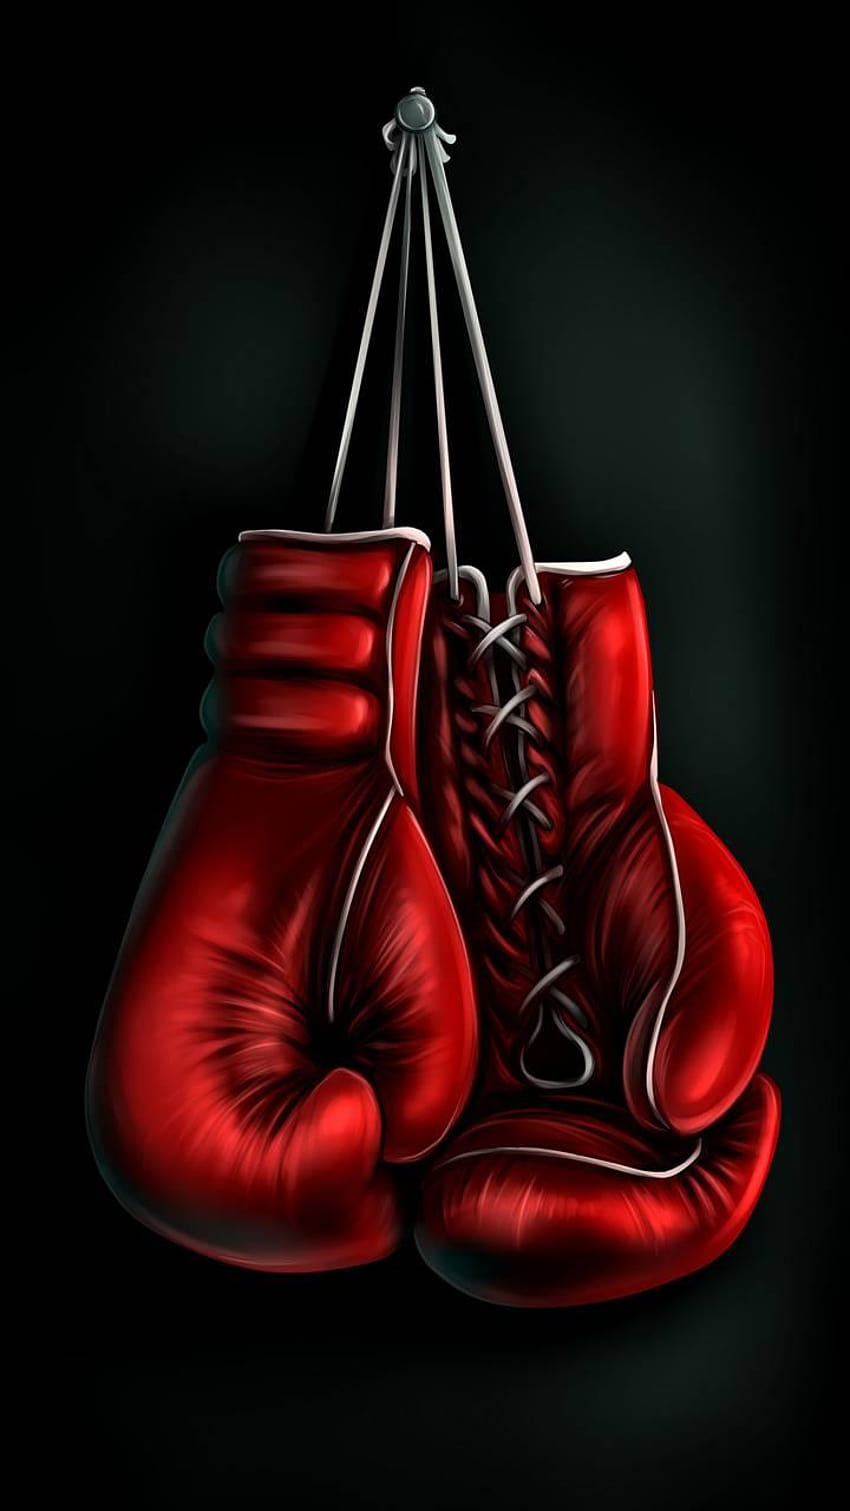 ボクシング 作成者: 9665052171akash, boxing android HD電話の壁紙